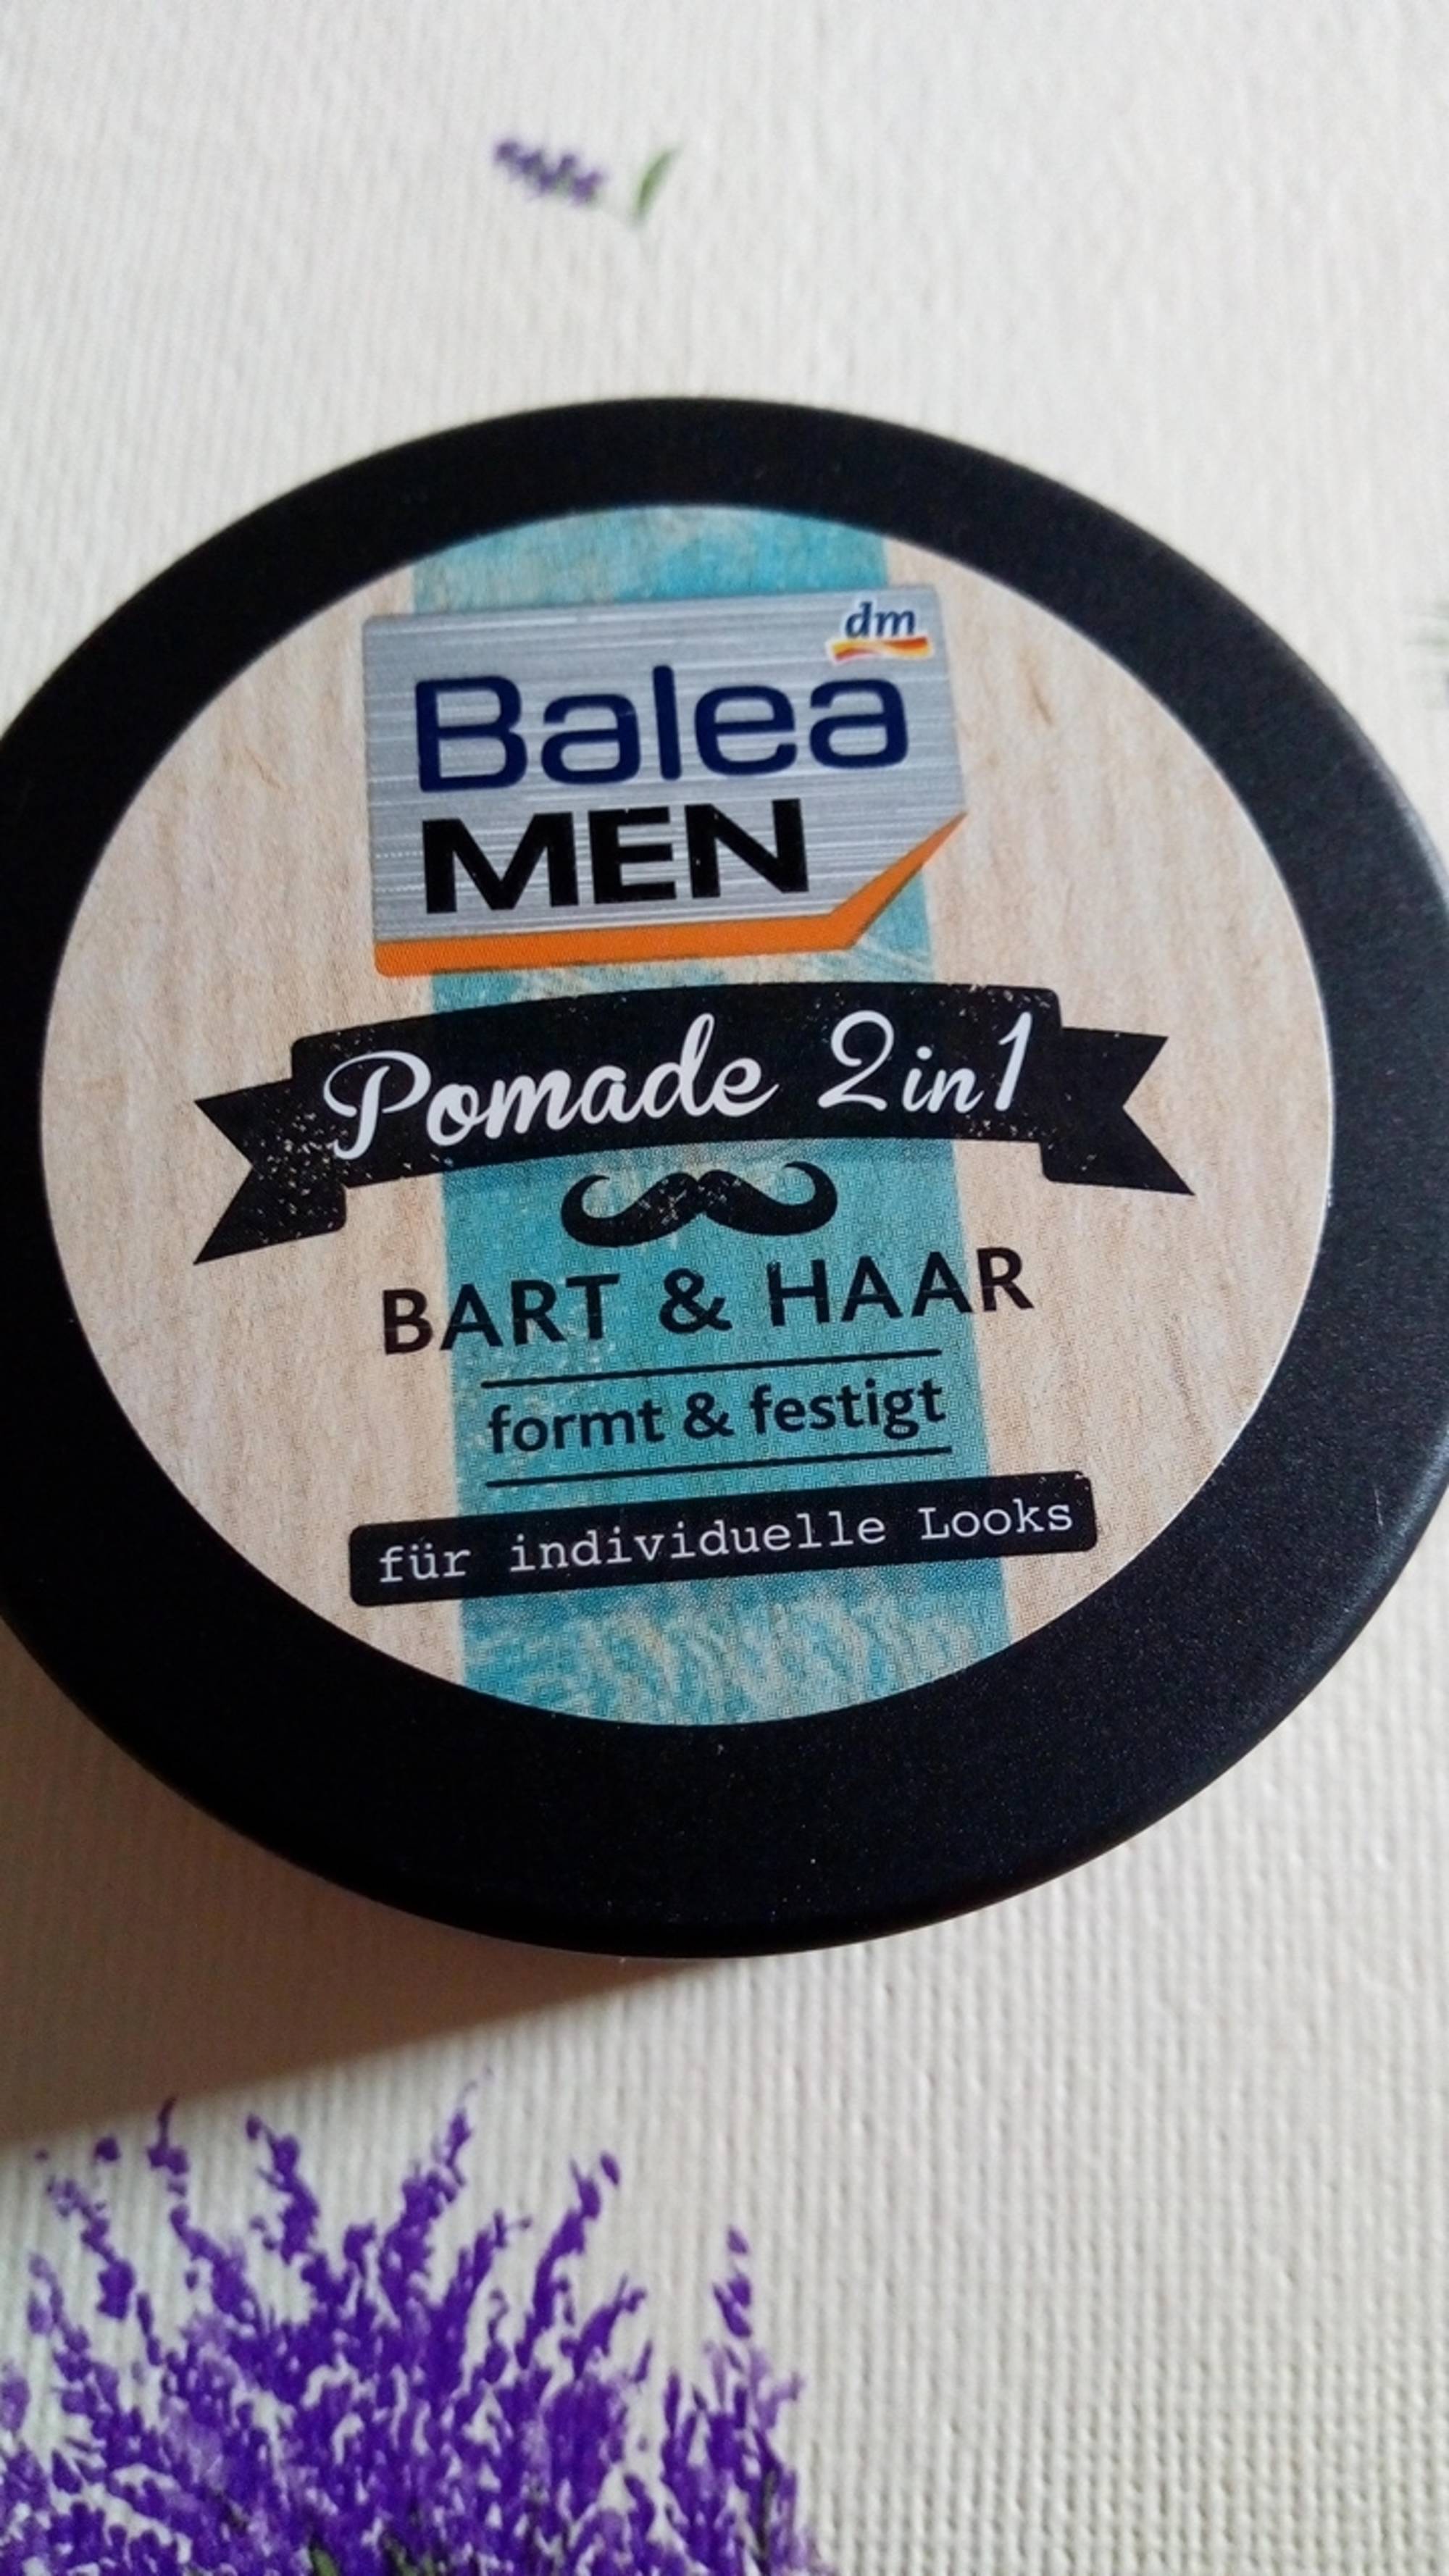 BALEA MEN - Pomade 2 en 1 bart & haar